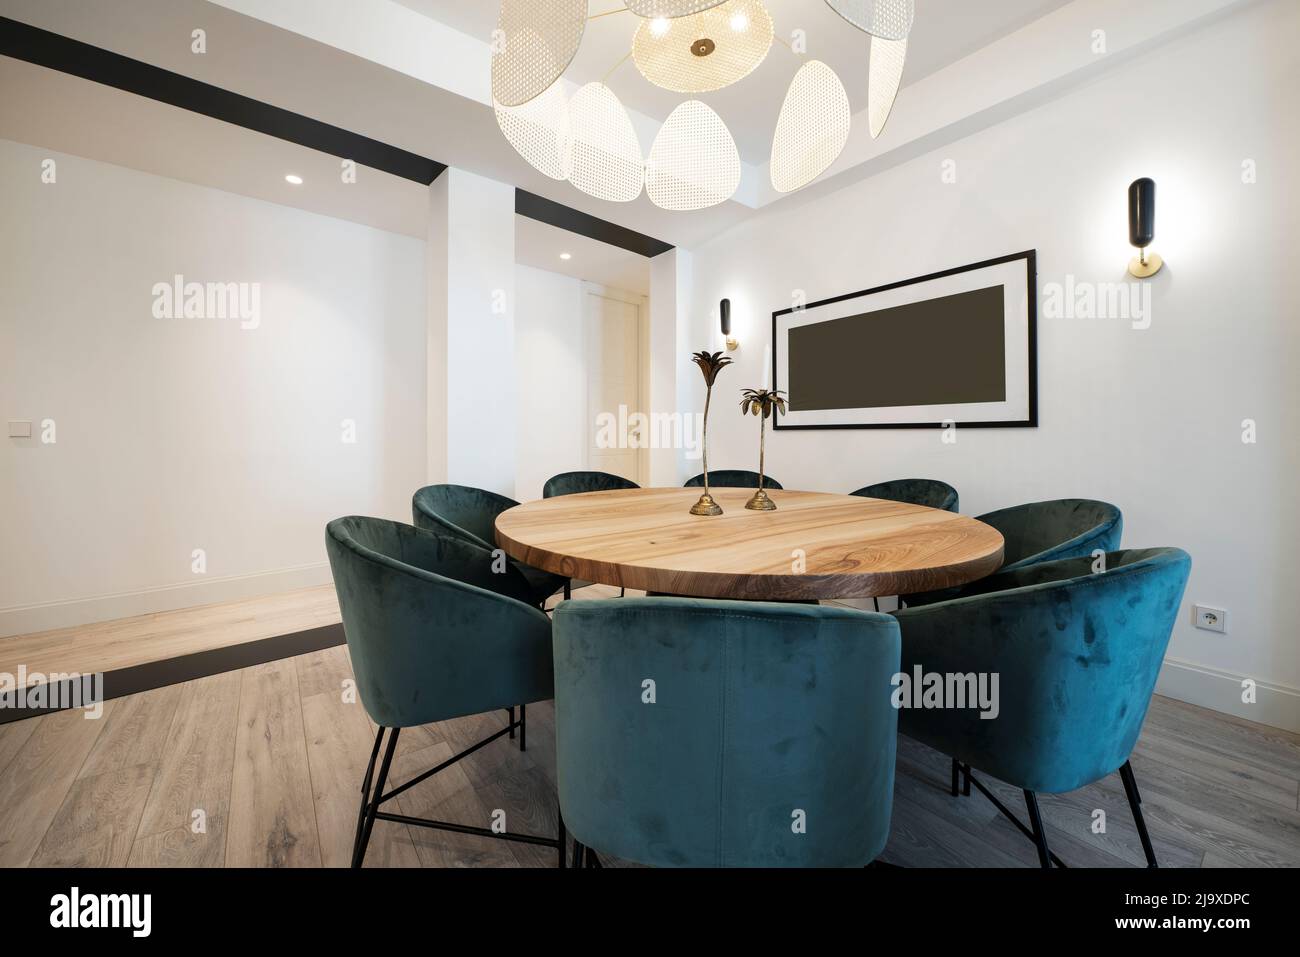 Runder Esstisch mit Rohholzlack, umgeben von blauen gepolsterten Samtsesseln unter einer Designer-Lampe Stockfoto